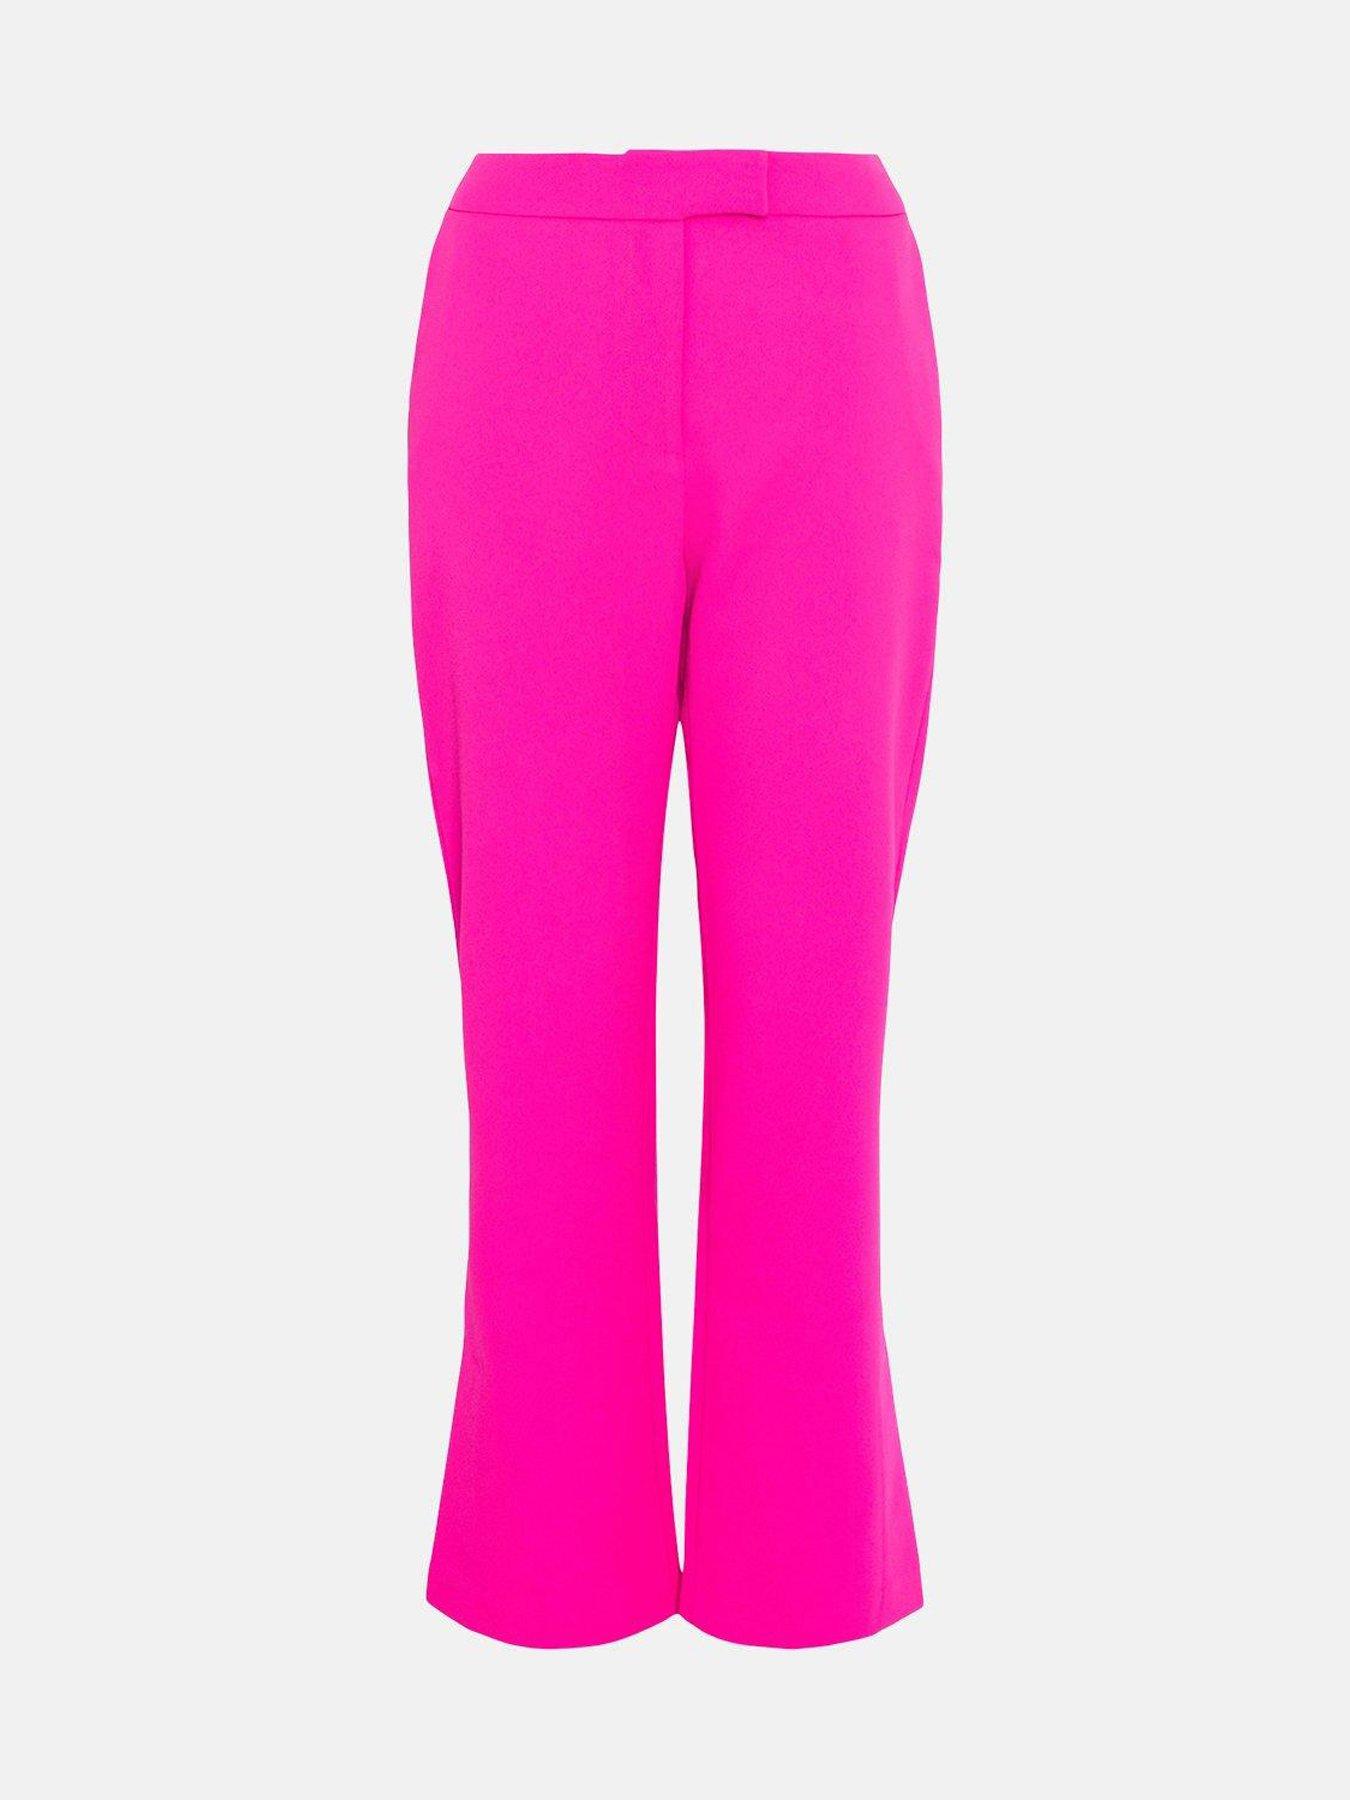 discount 77% Pink 110                  EU KIDS FASHION Trousers Print Zara slacks 